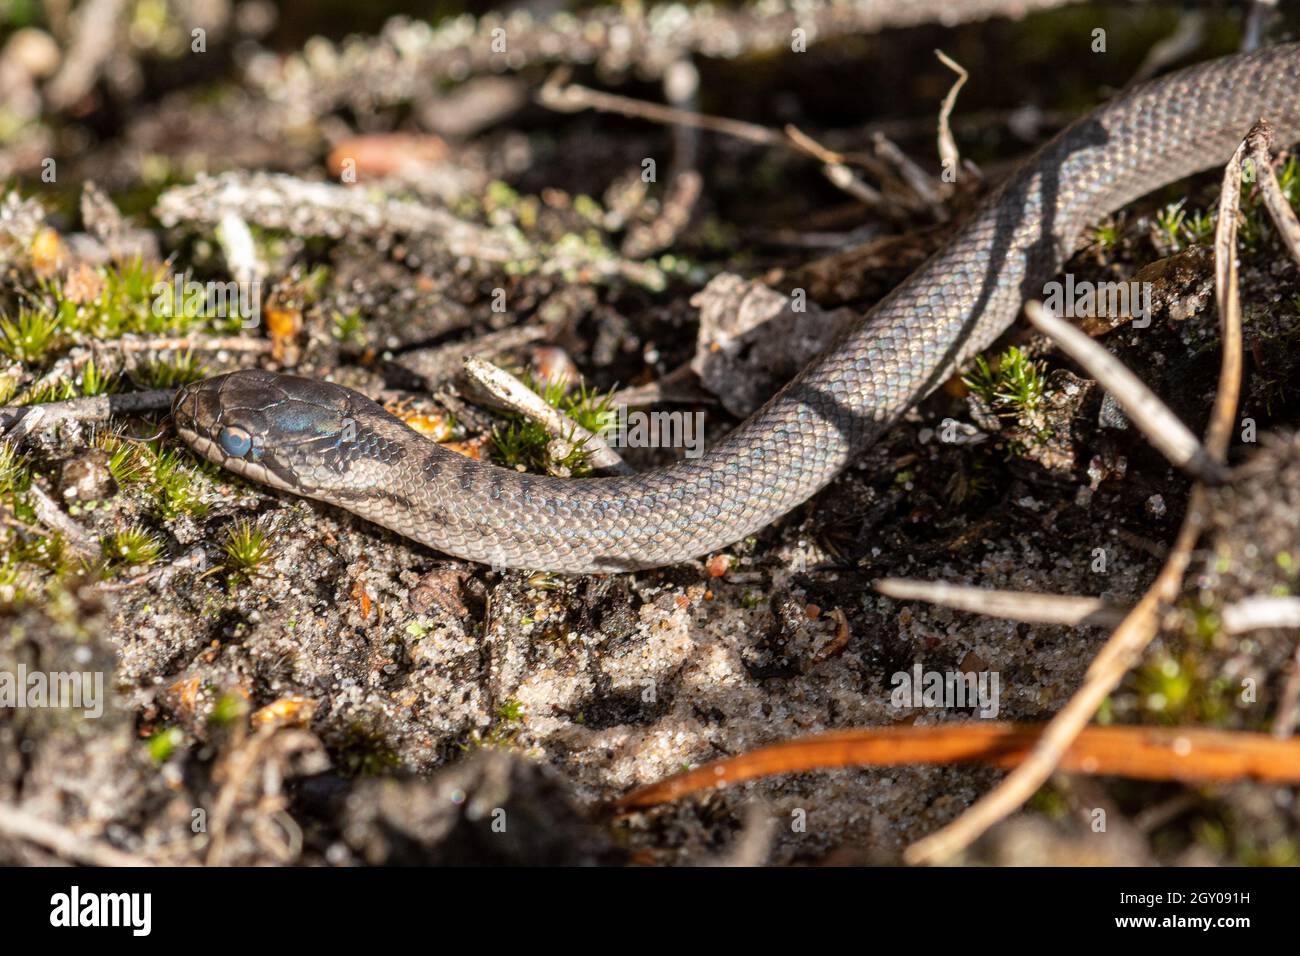 Neugeborene glatte Schlange (Coronella austriaca), eine seltene Reptilienart, in natürlichem Heideland-Lebensraum in Surrey, England, Großbritannien Stockfoto